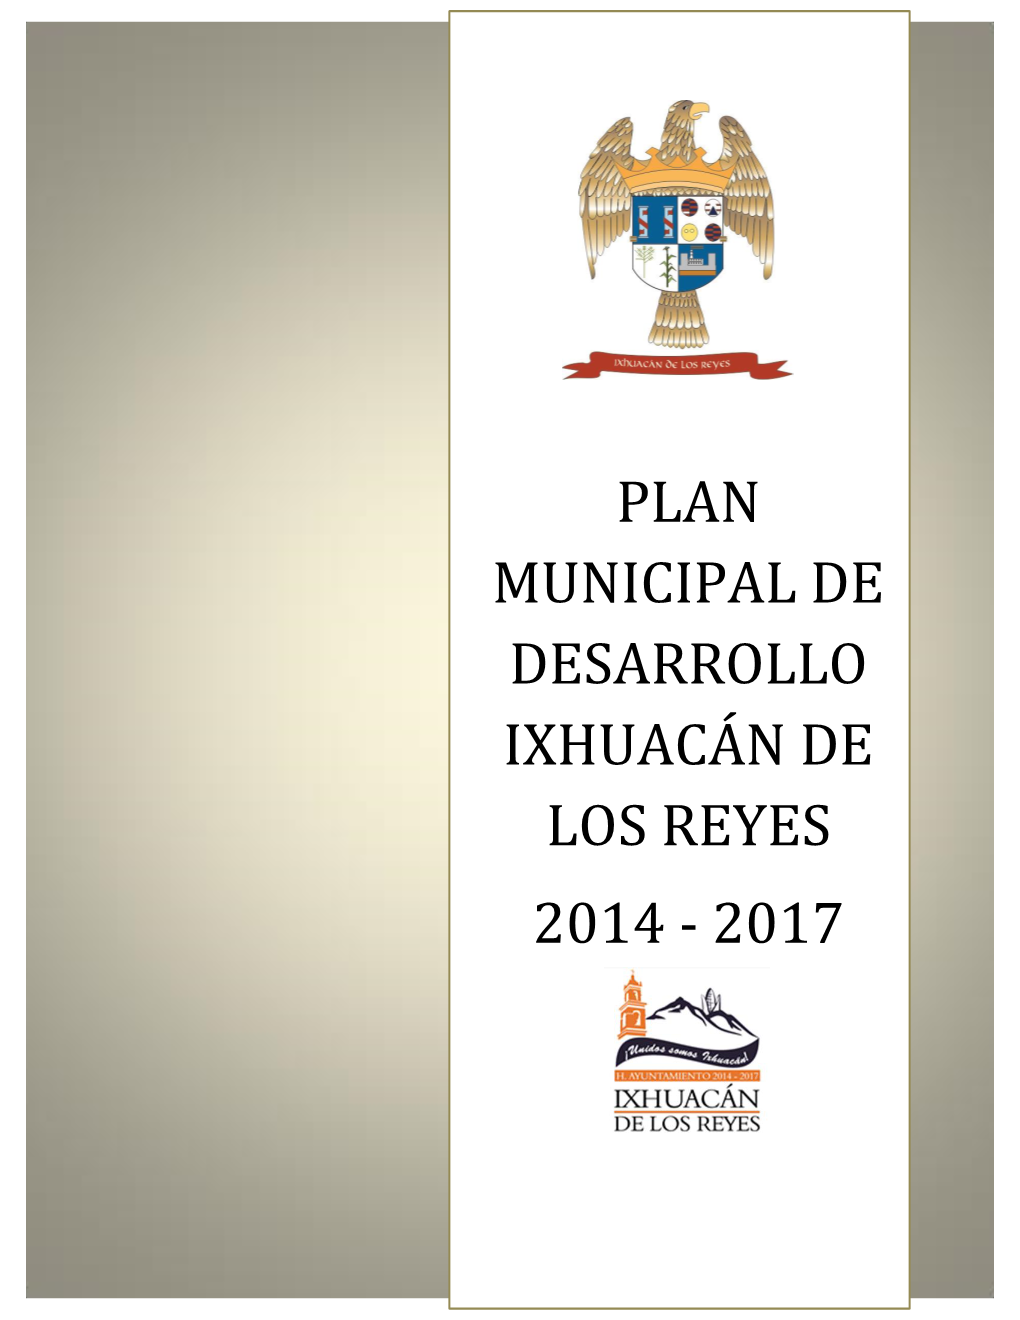 Plan Municipal De Desarrollo Ixhuacán De Los Reyes 2014 - 2017